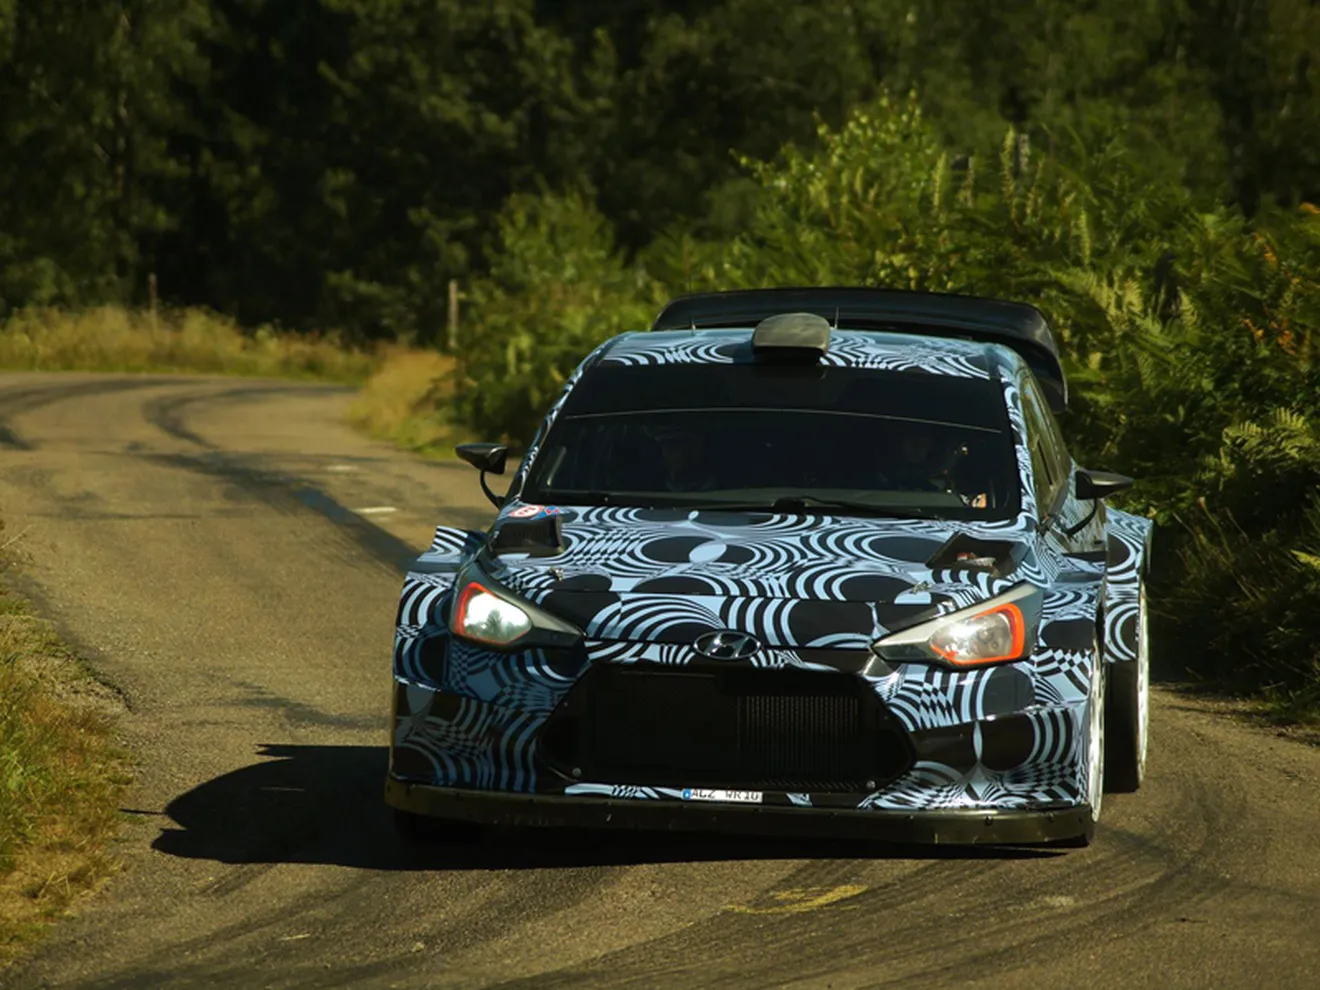 Primeros test del Hyundai i20 WRC 2017 en asfalto